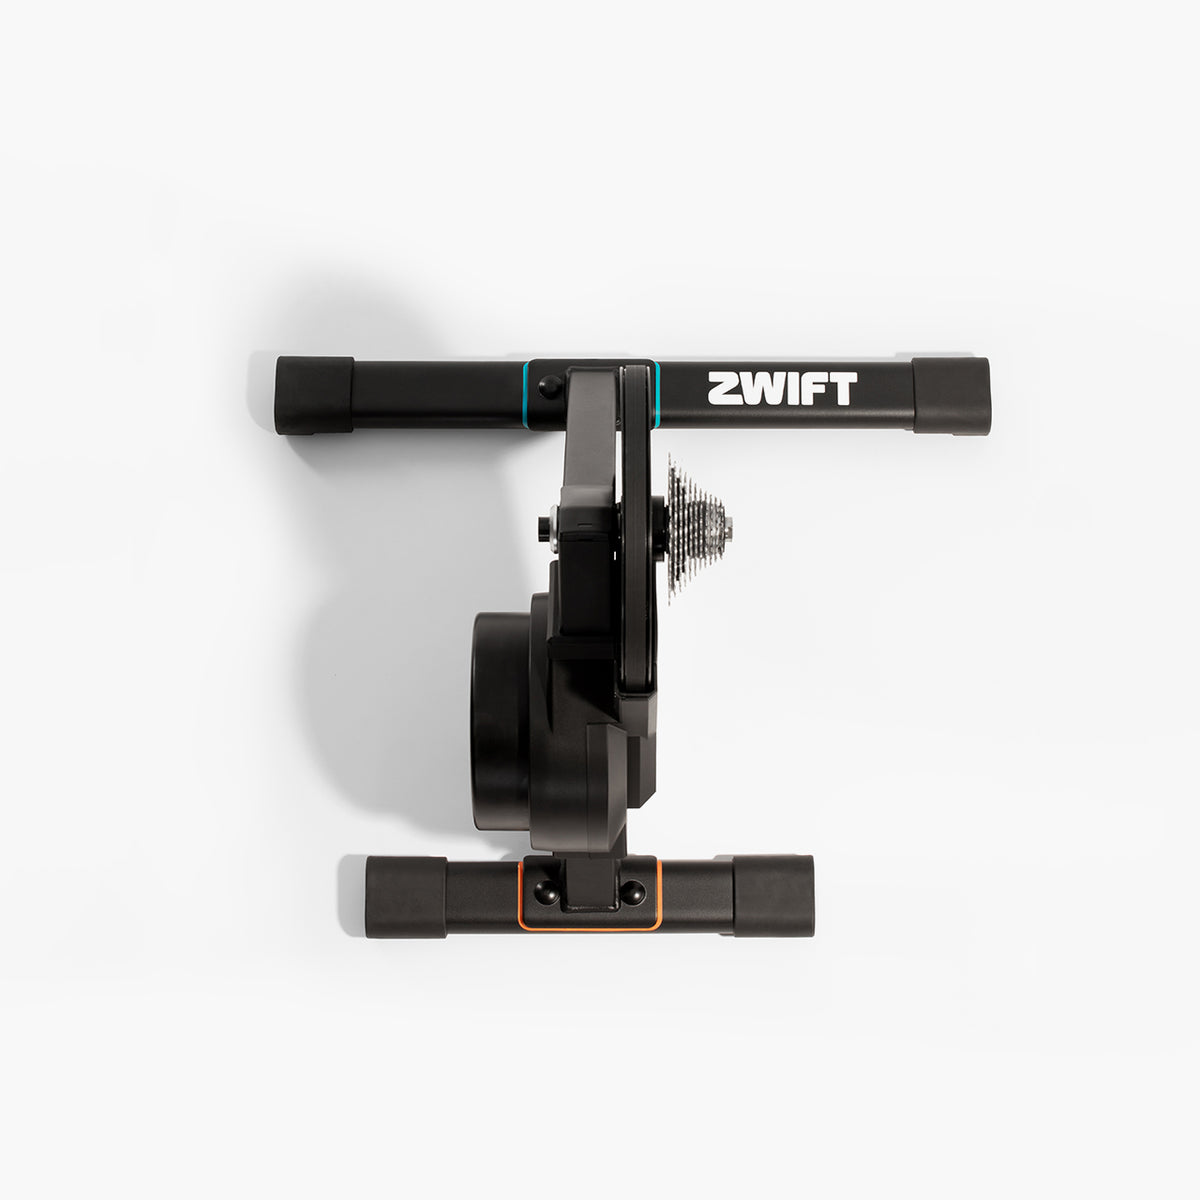 Rodillo inteligente Zwift Hub con cassette de 11 velocidades